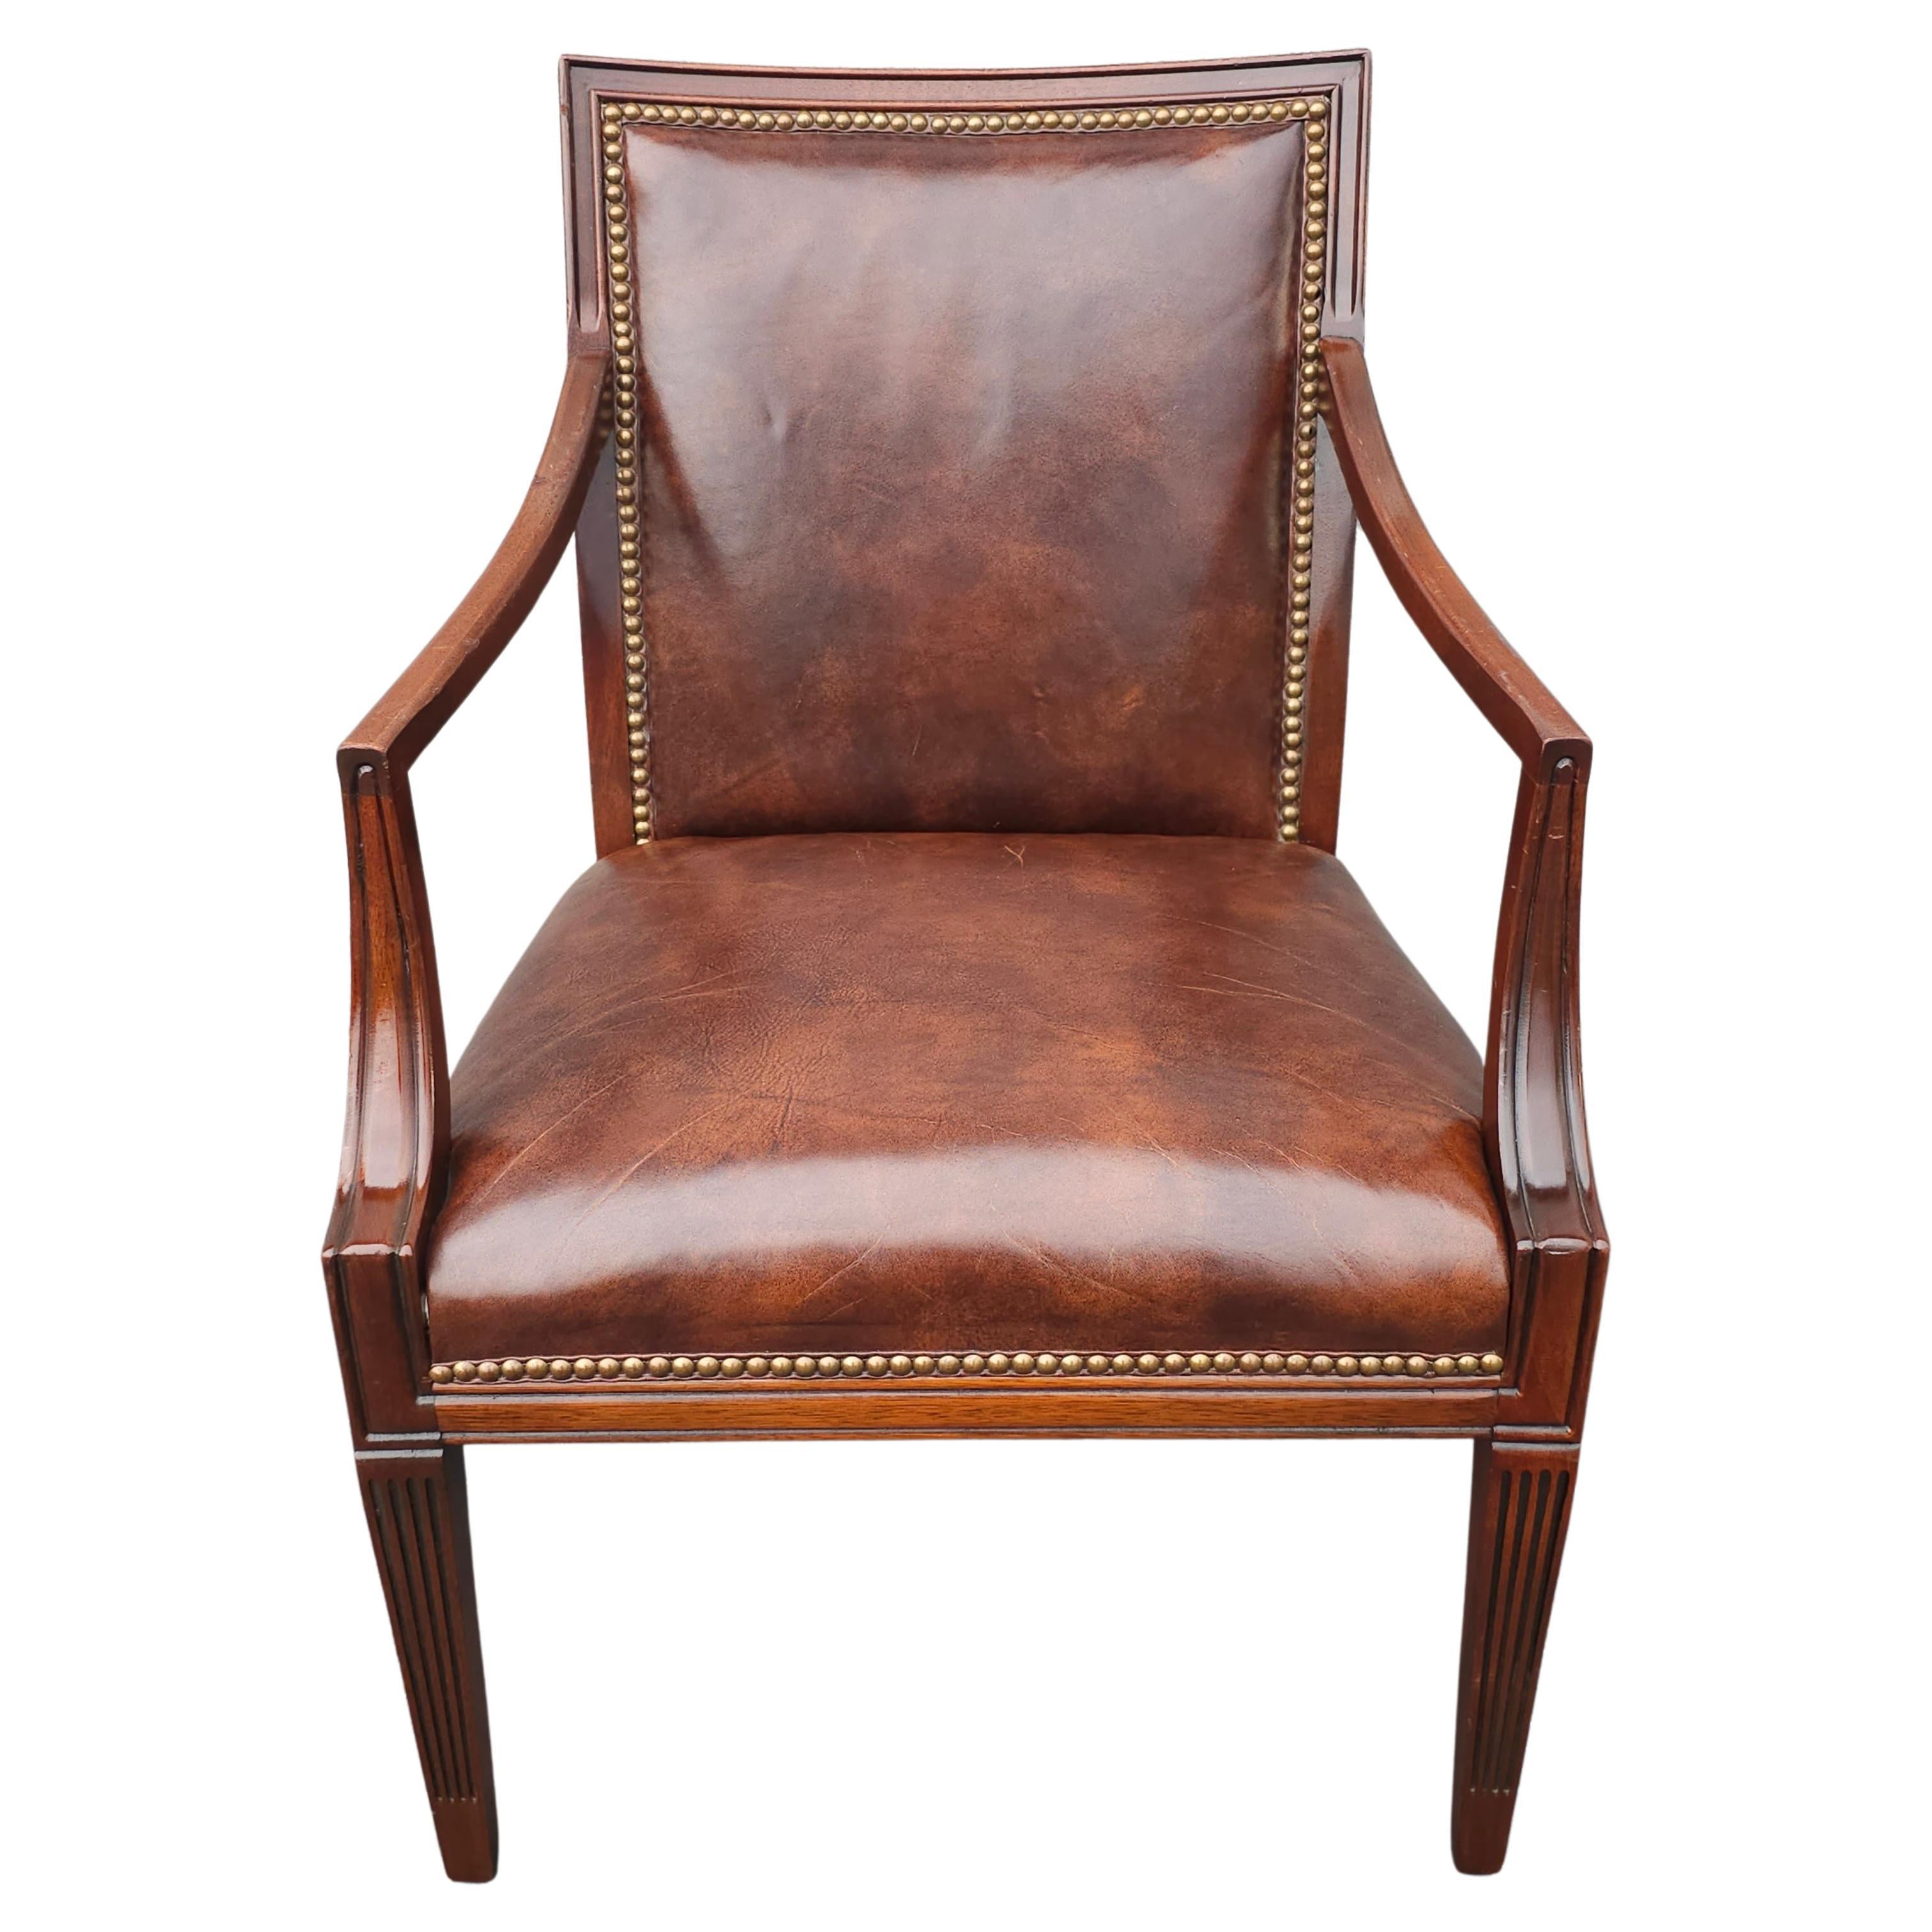 Stateville Chair Co. aus dem 20. Jahrhundert. Mahagoni und Leder gepolsterter Sessel 